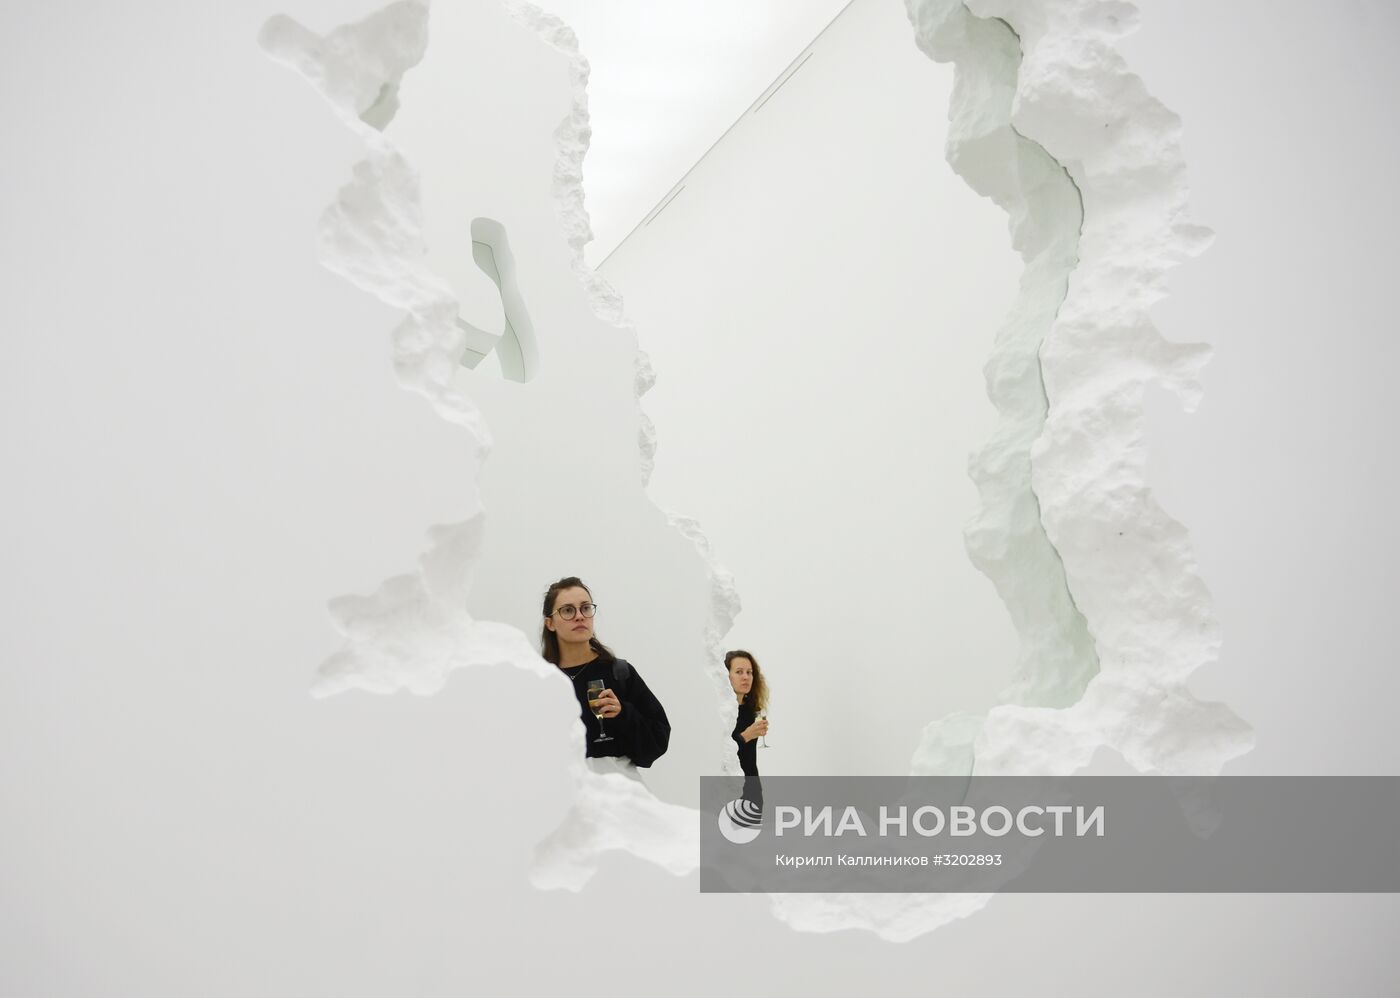 Выставка Даниэля Аршама "Архитектура в движении"